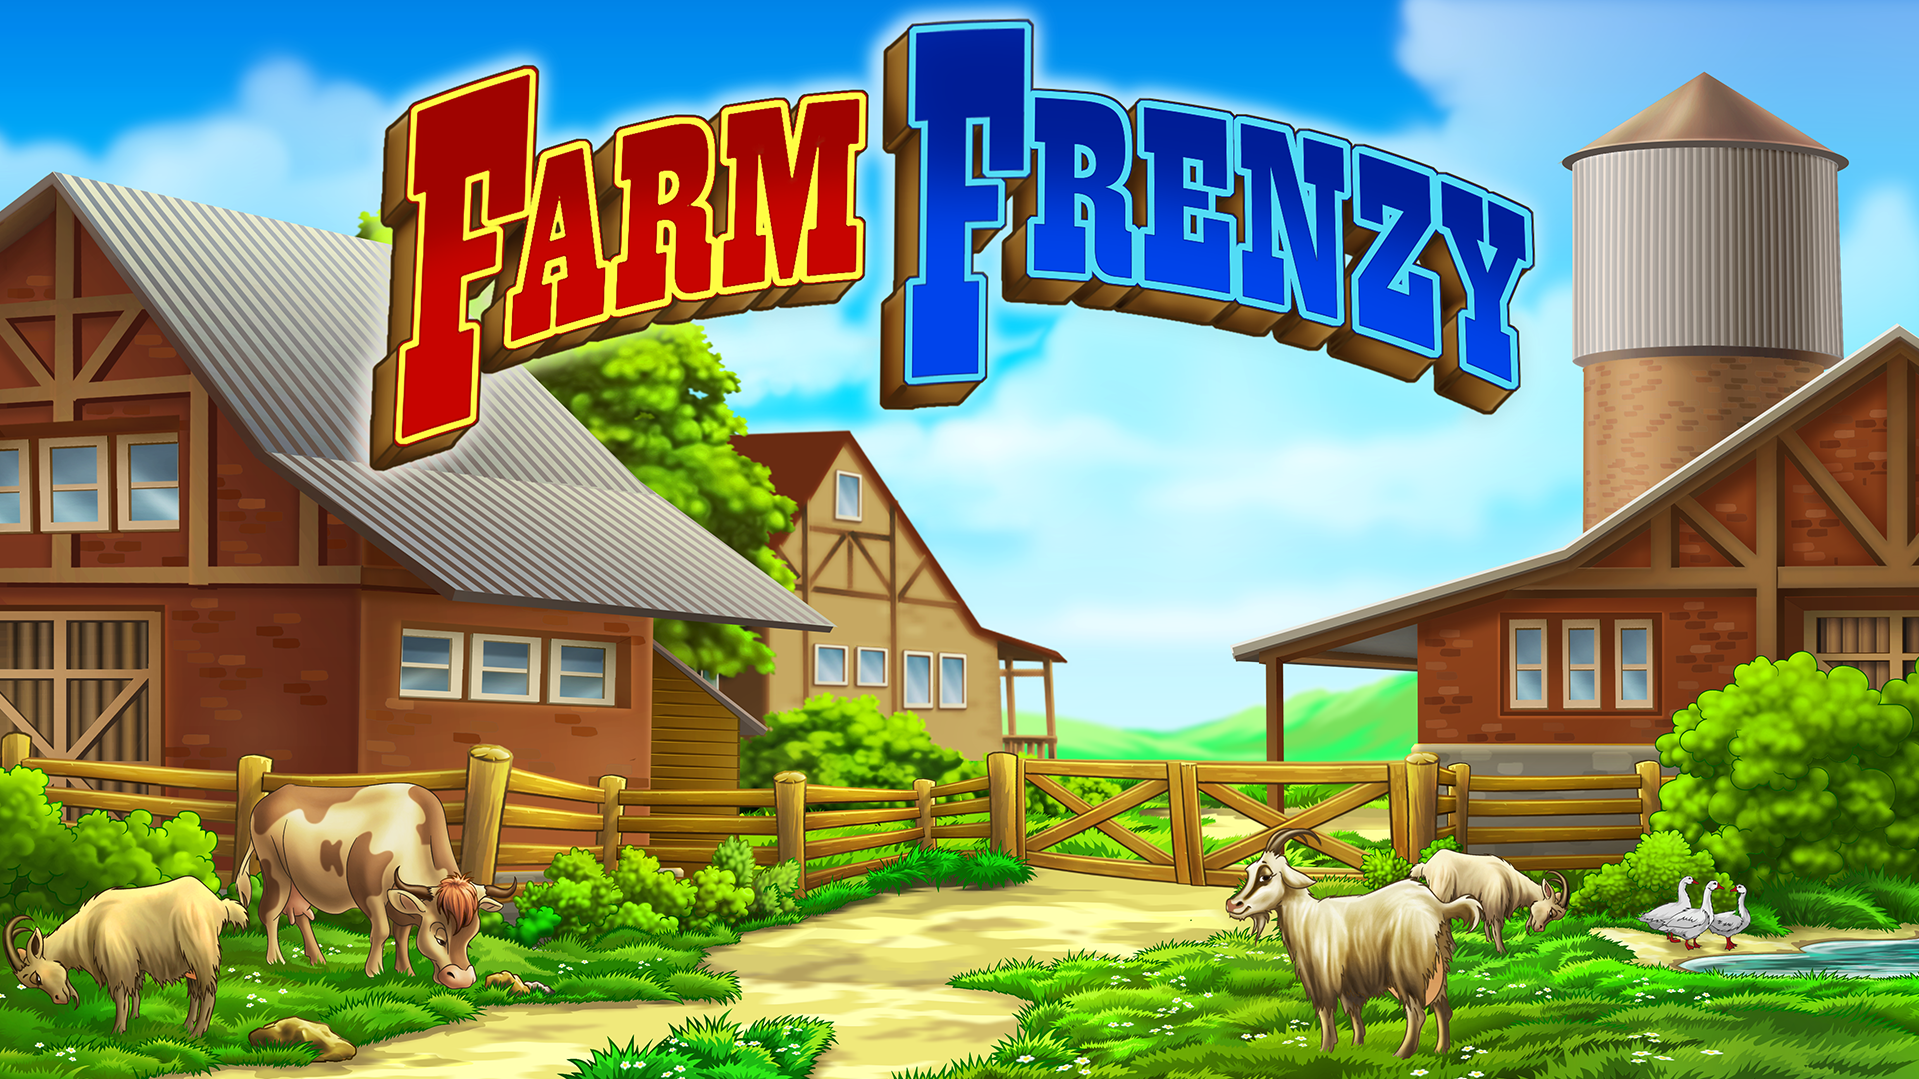 Farm Frenzy: Happy Village near Big Townのキャプチャ